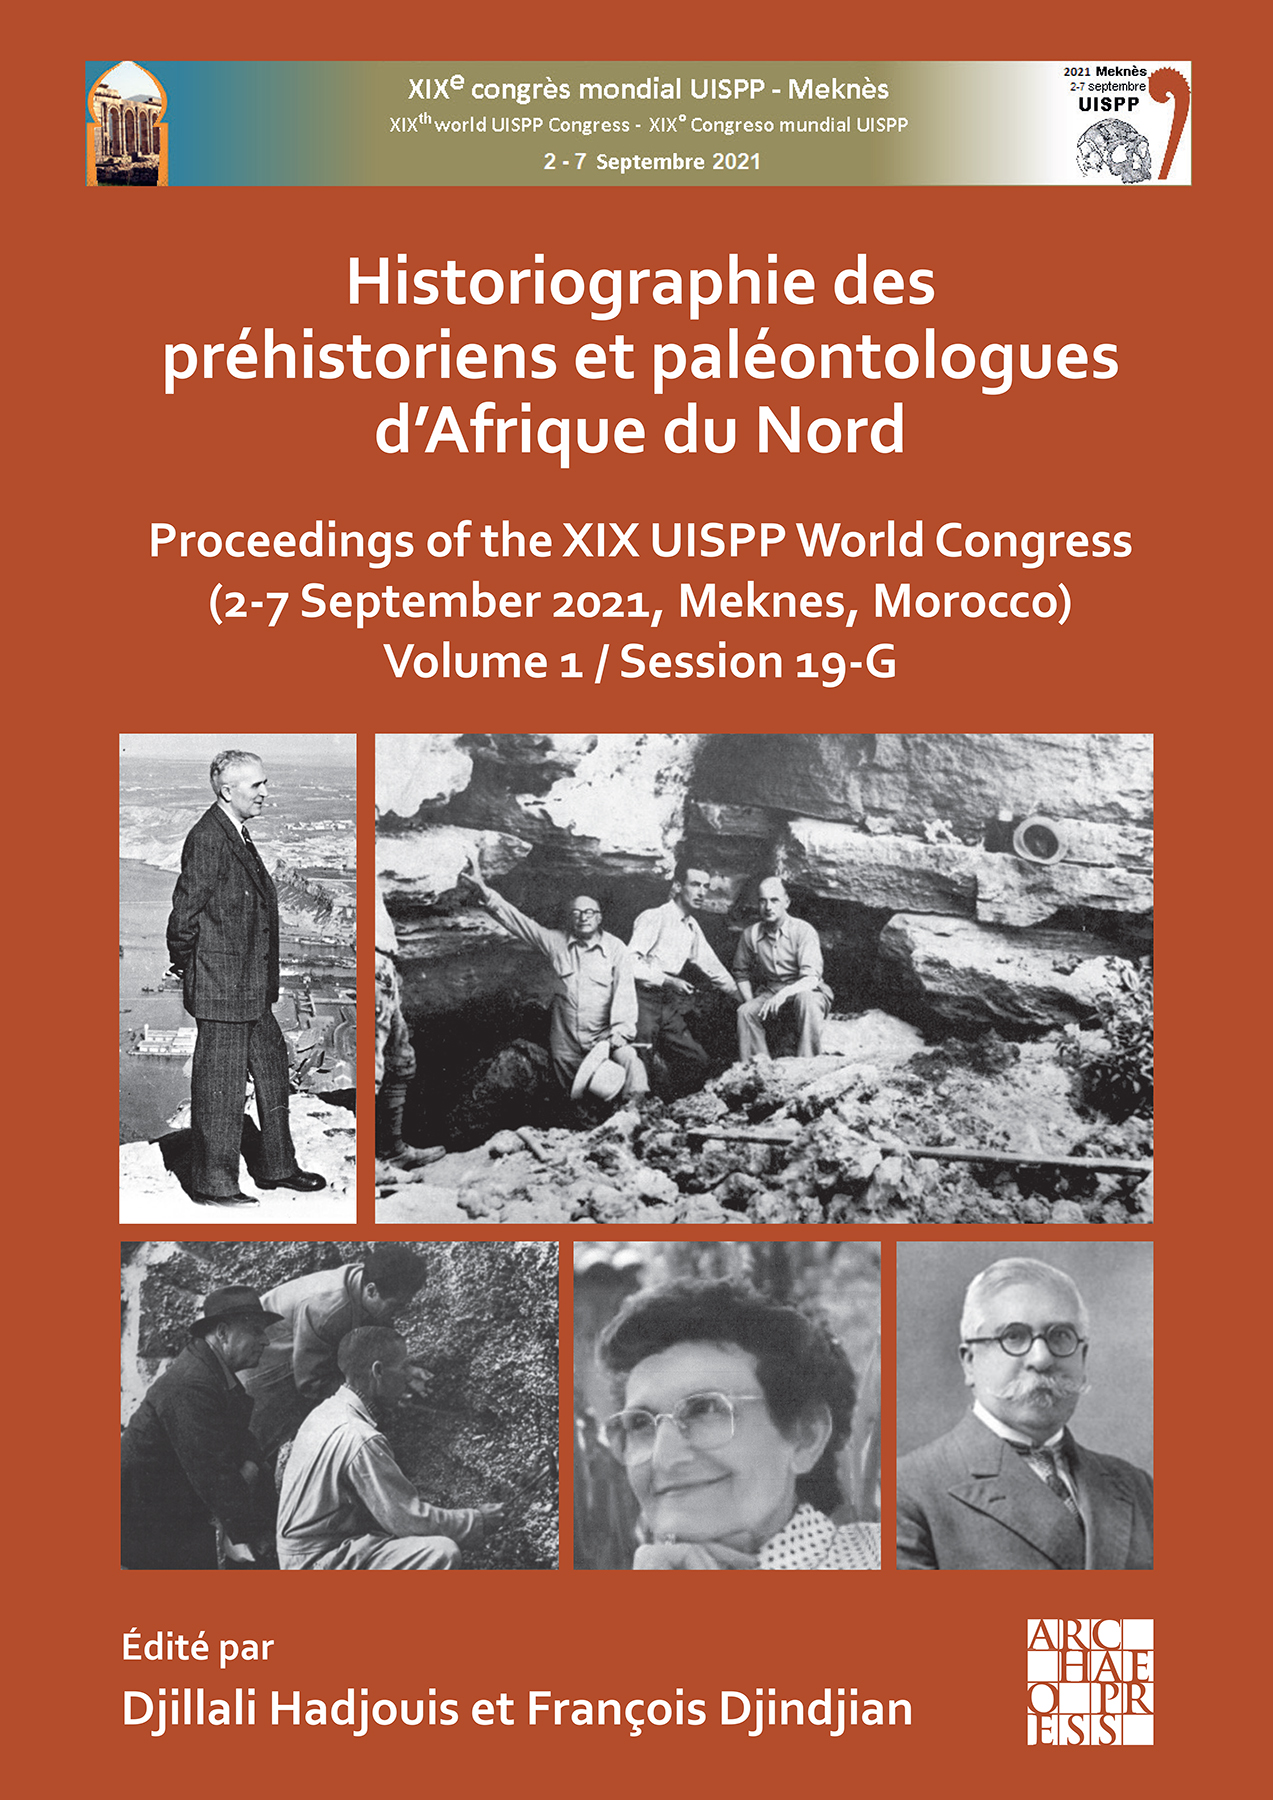 Historiographie des préhistoriens et paléontologues d'Afrique du Nord, (actes XIXe coll. UISPP, Sept. 2021, Meknes, Maroc), Volume 1 / Session 19-G, 2023, 202 p.